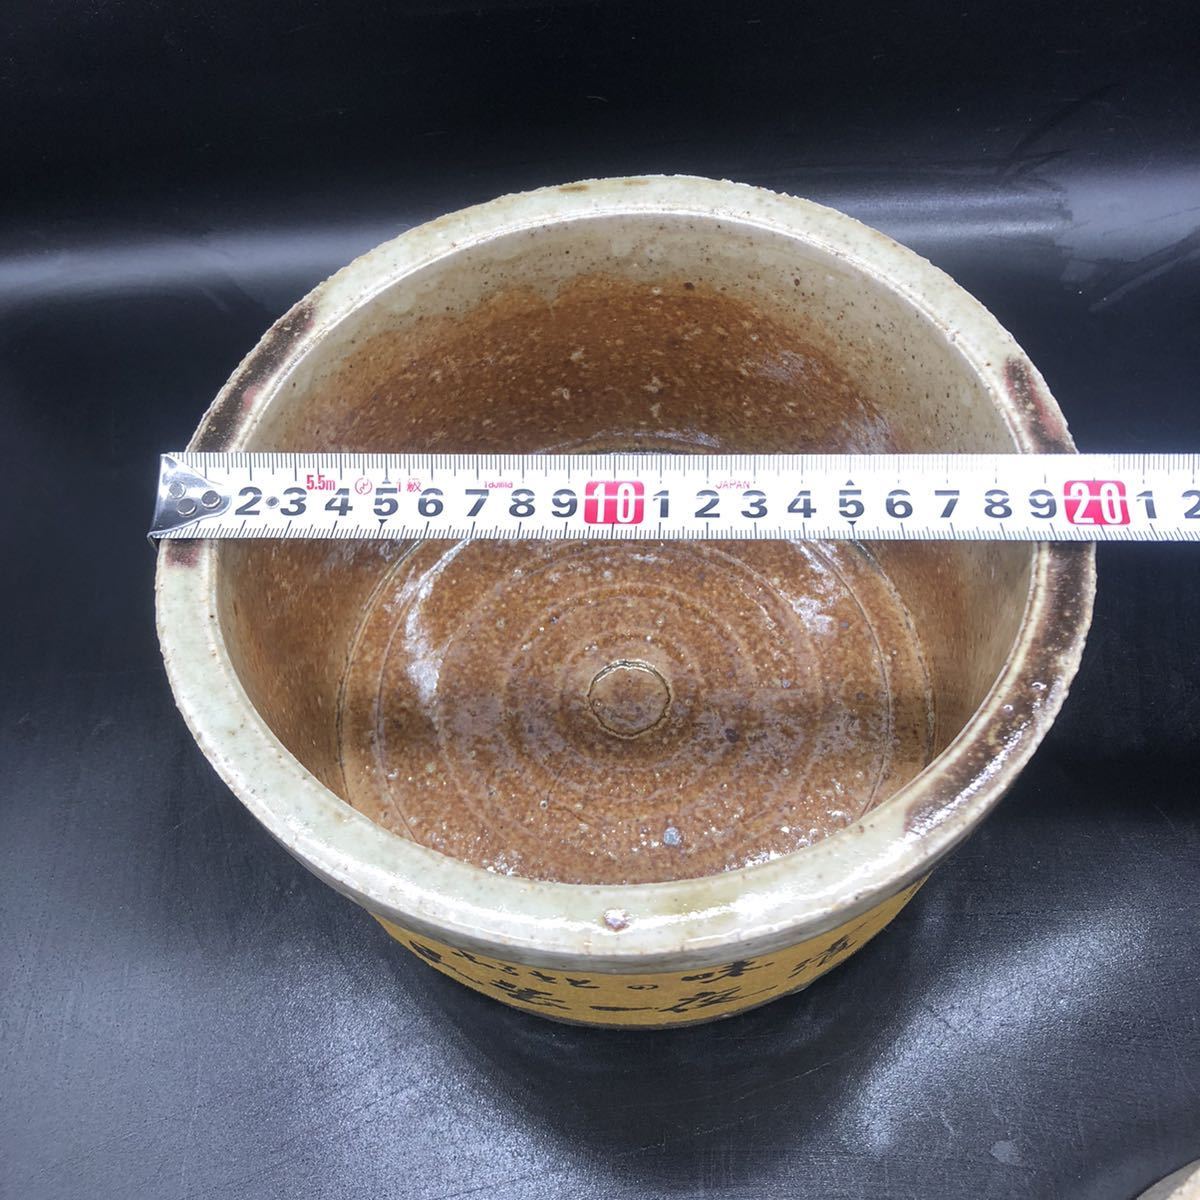  один ночь . горшок ..... тест .. -слойный камень имеется солености tsukemono инструмент солености tsukemono контейнер не использовался керамика контейнер посуда O33